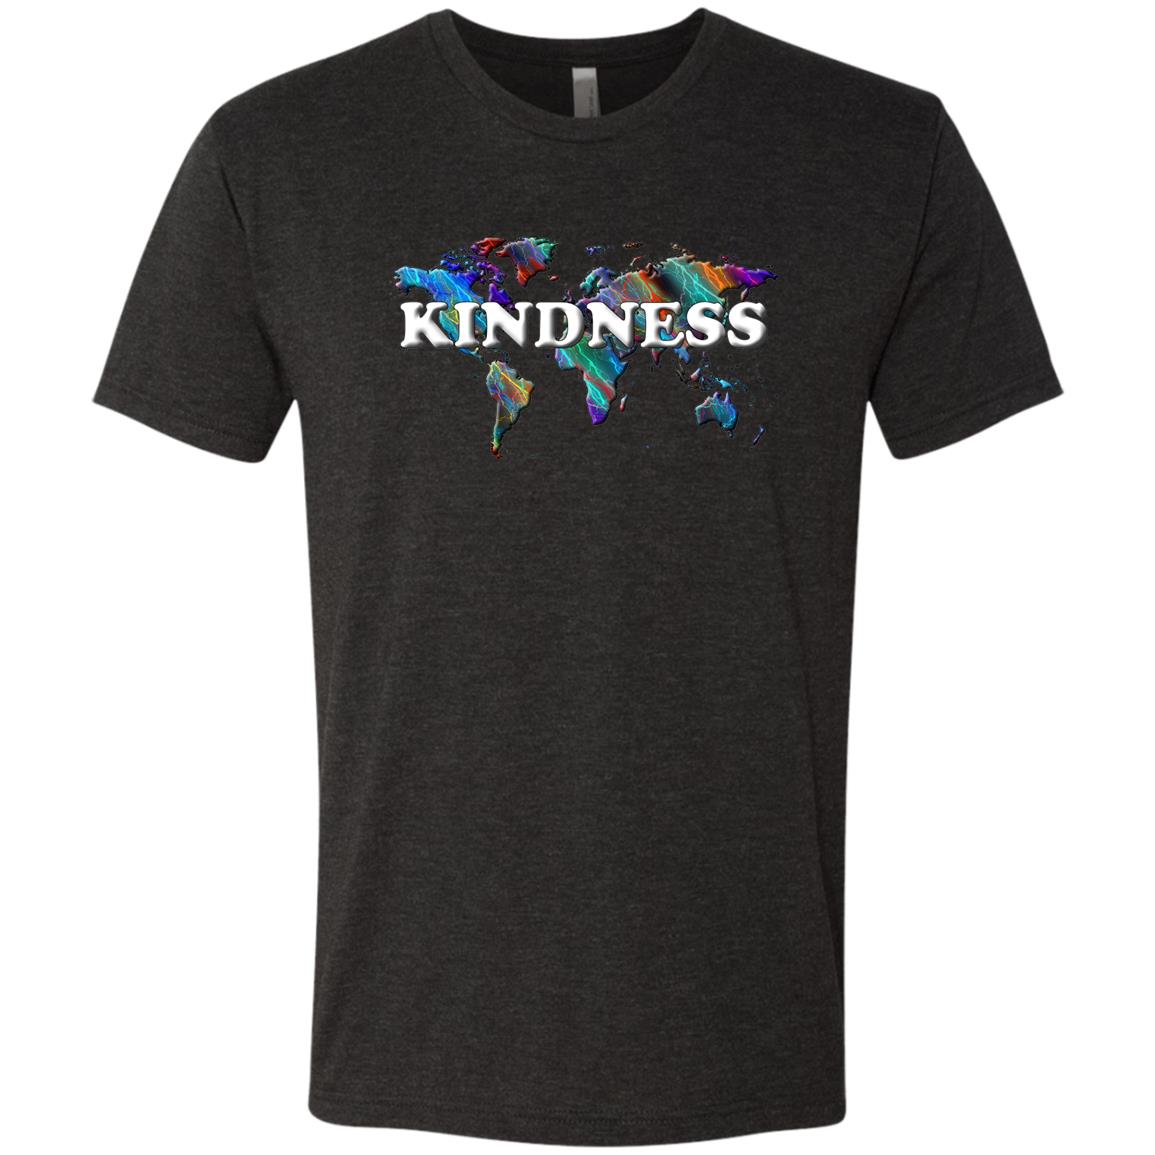 Kindness Statement T-Shirt